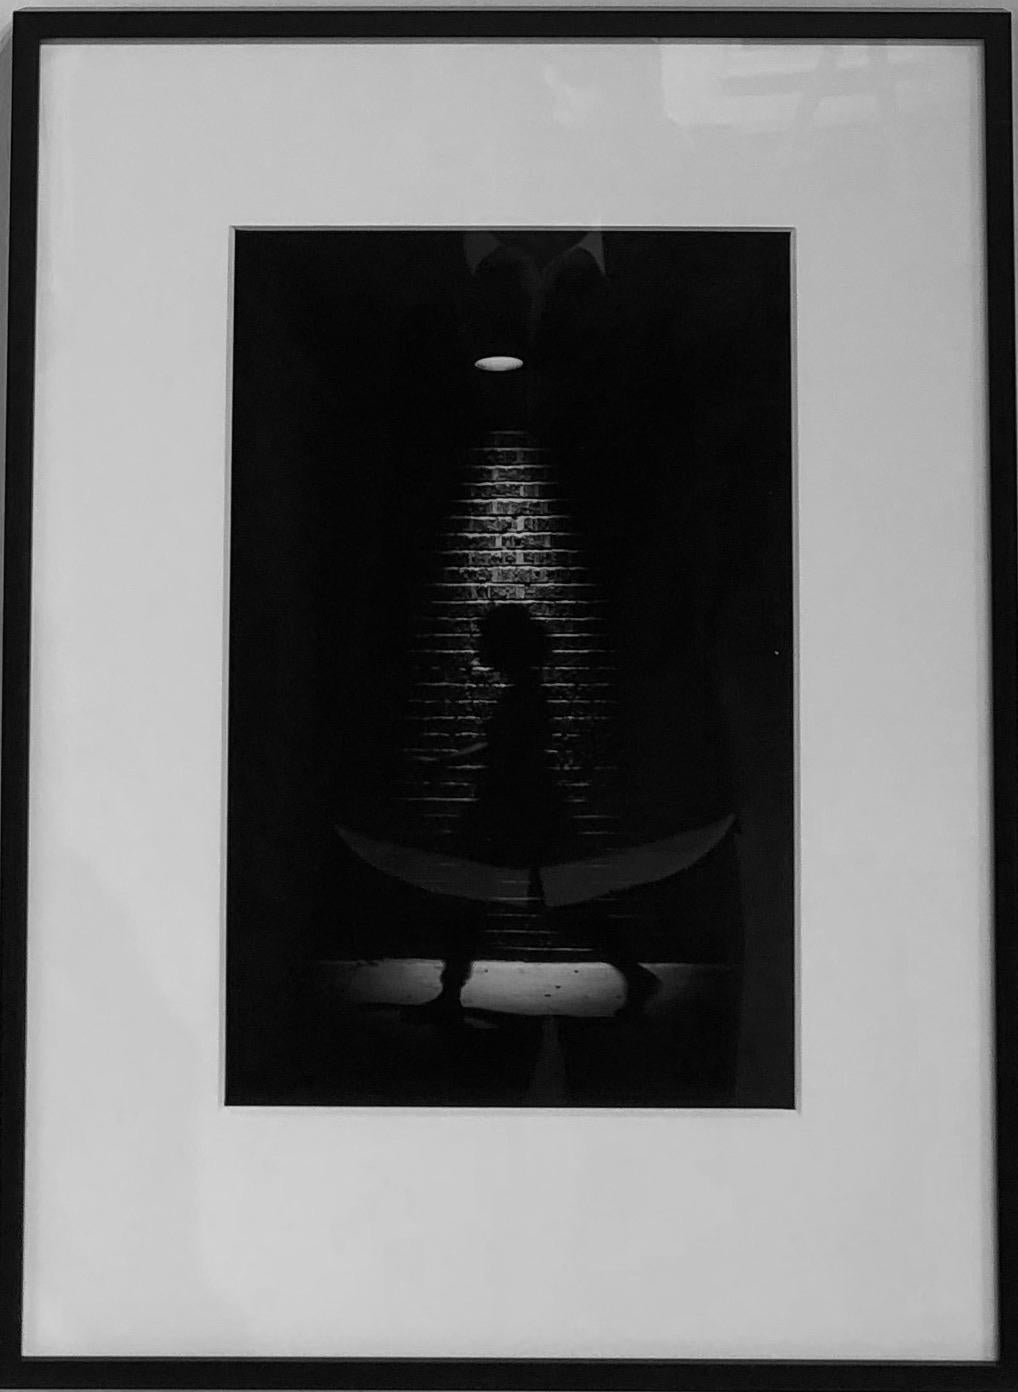 Ghost, Chicago, silhouette d'une femme, photographie en noir et blanc, encadrée - Photograph de Kirill Polevoy